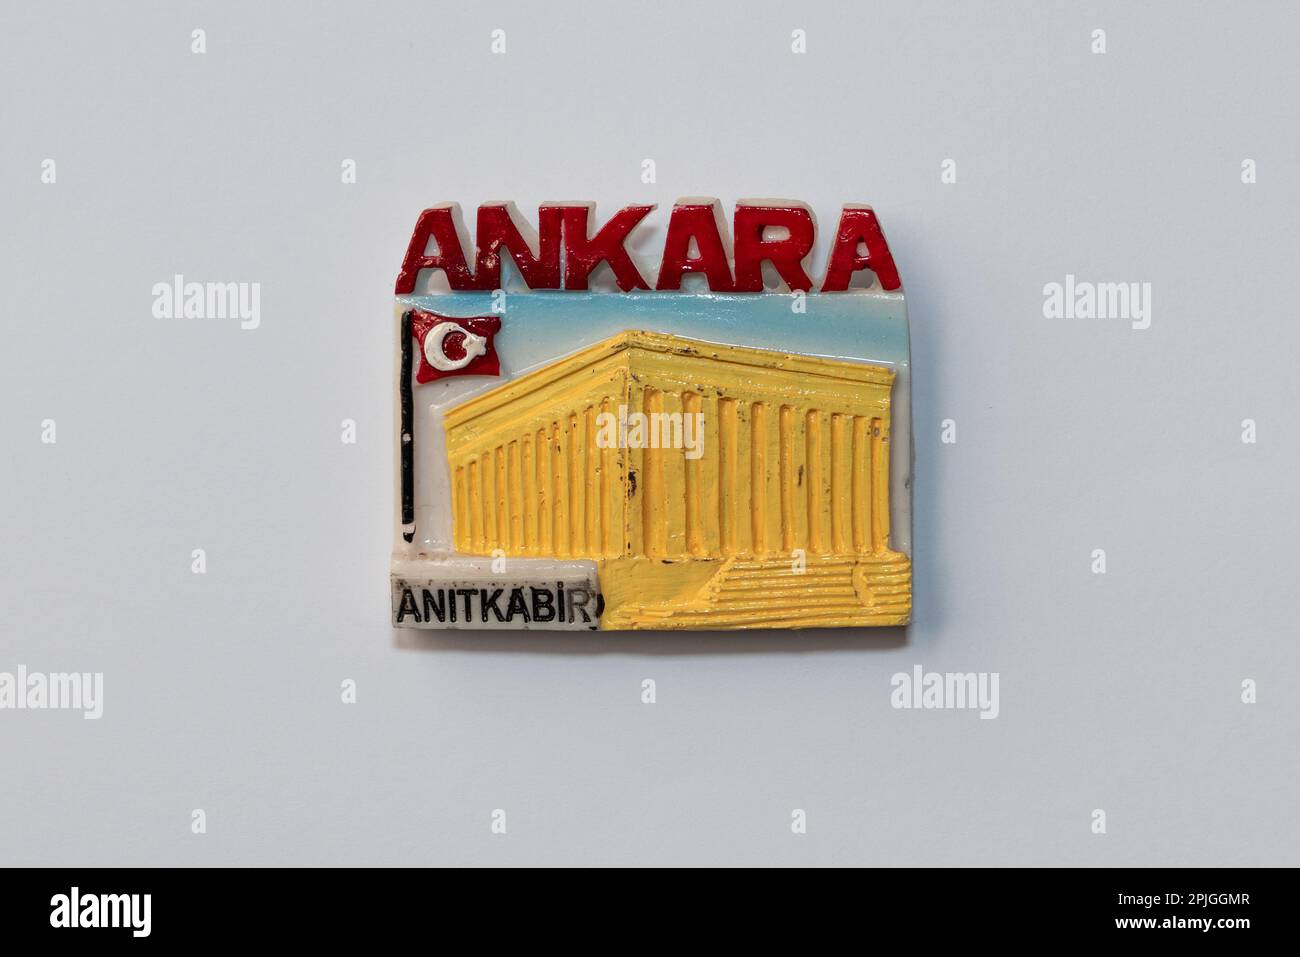 Der Reisekühlschrank-Souvenir-Magnet – Ankara, Türkei. Auf weißem  Hintergrund Stockfotografie - Alamy